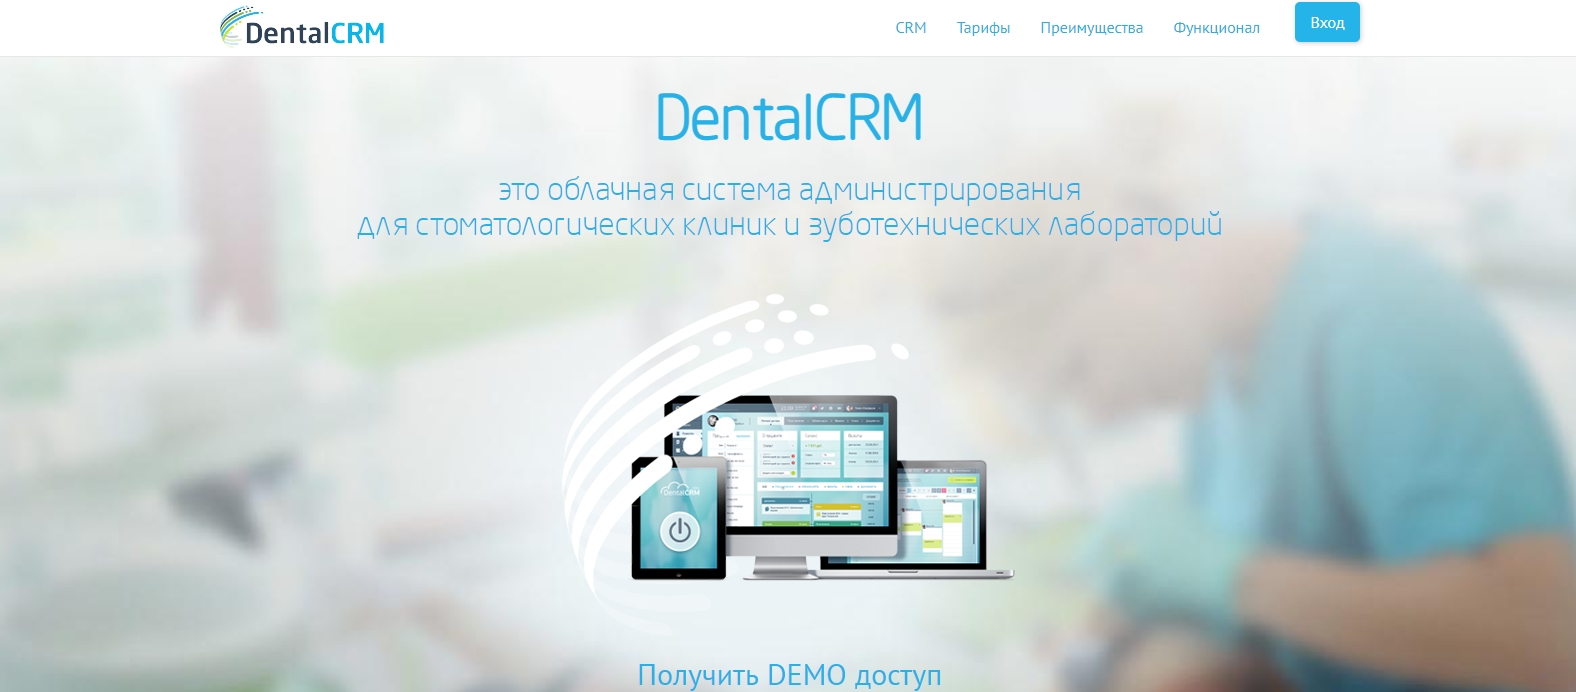 CRM для стоматологии DentalCRM